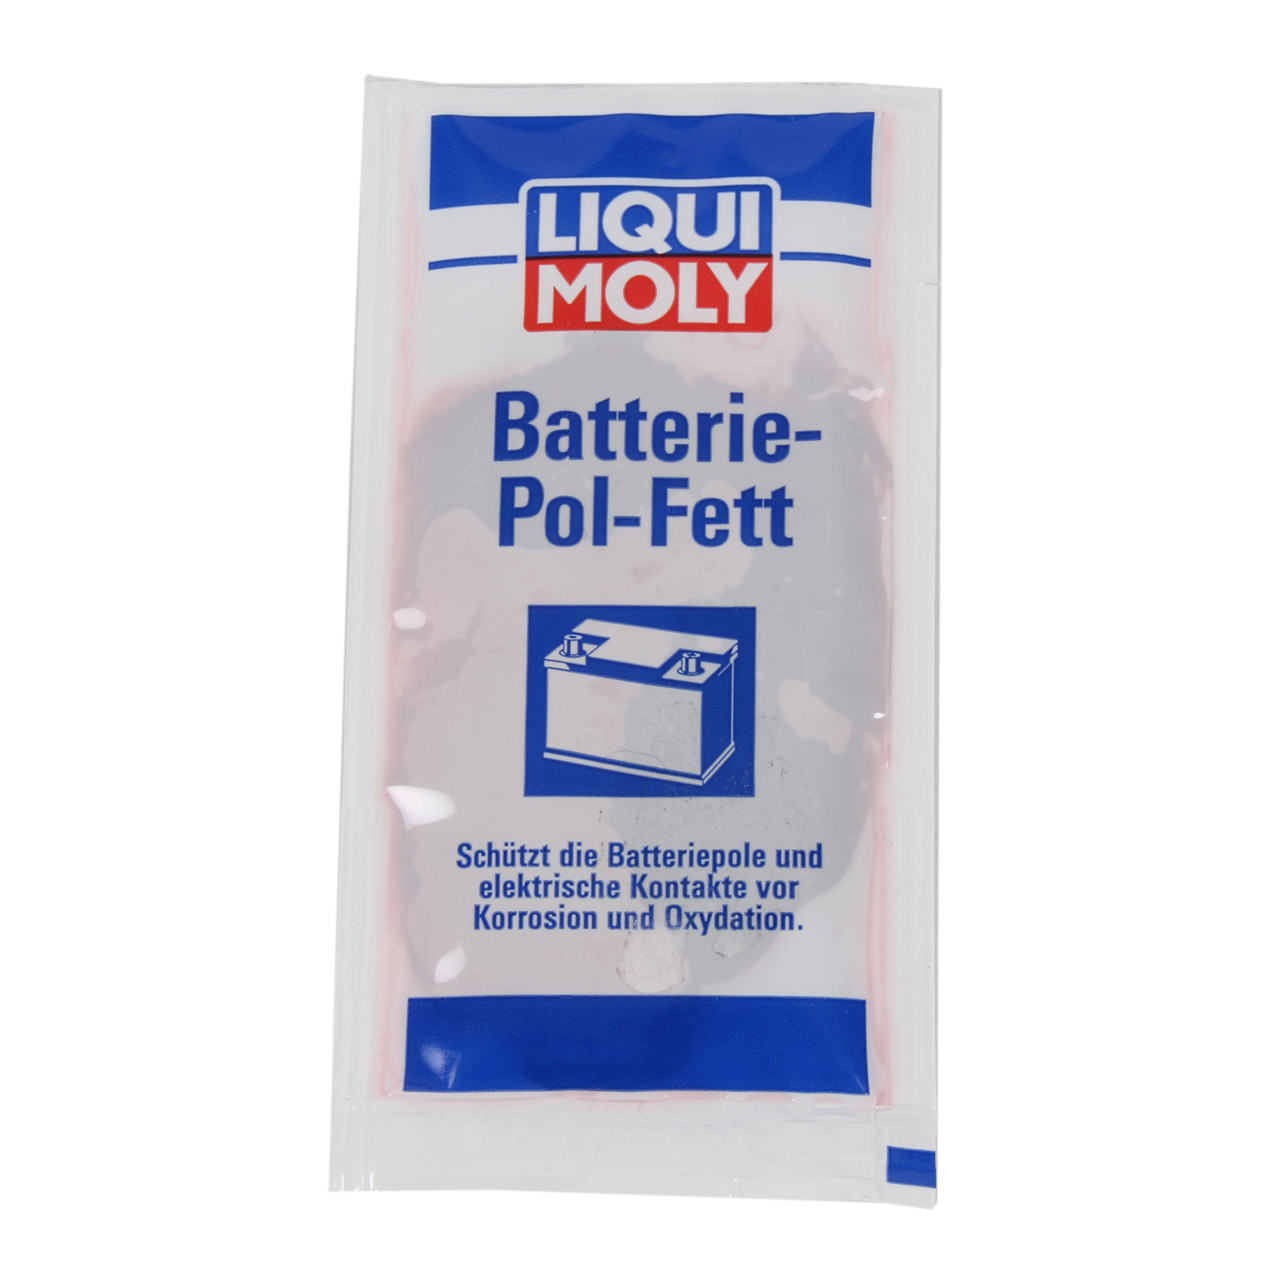 LIQUI MOLY 3139 Batteriepolfett Batterie-Pol-Fett 10 g